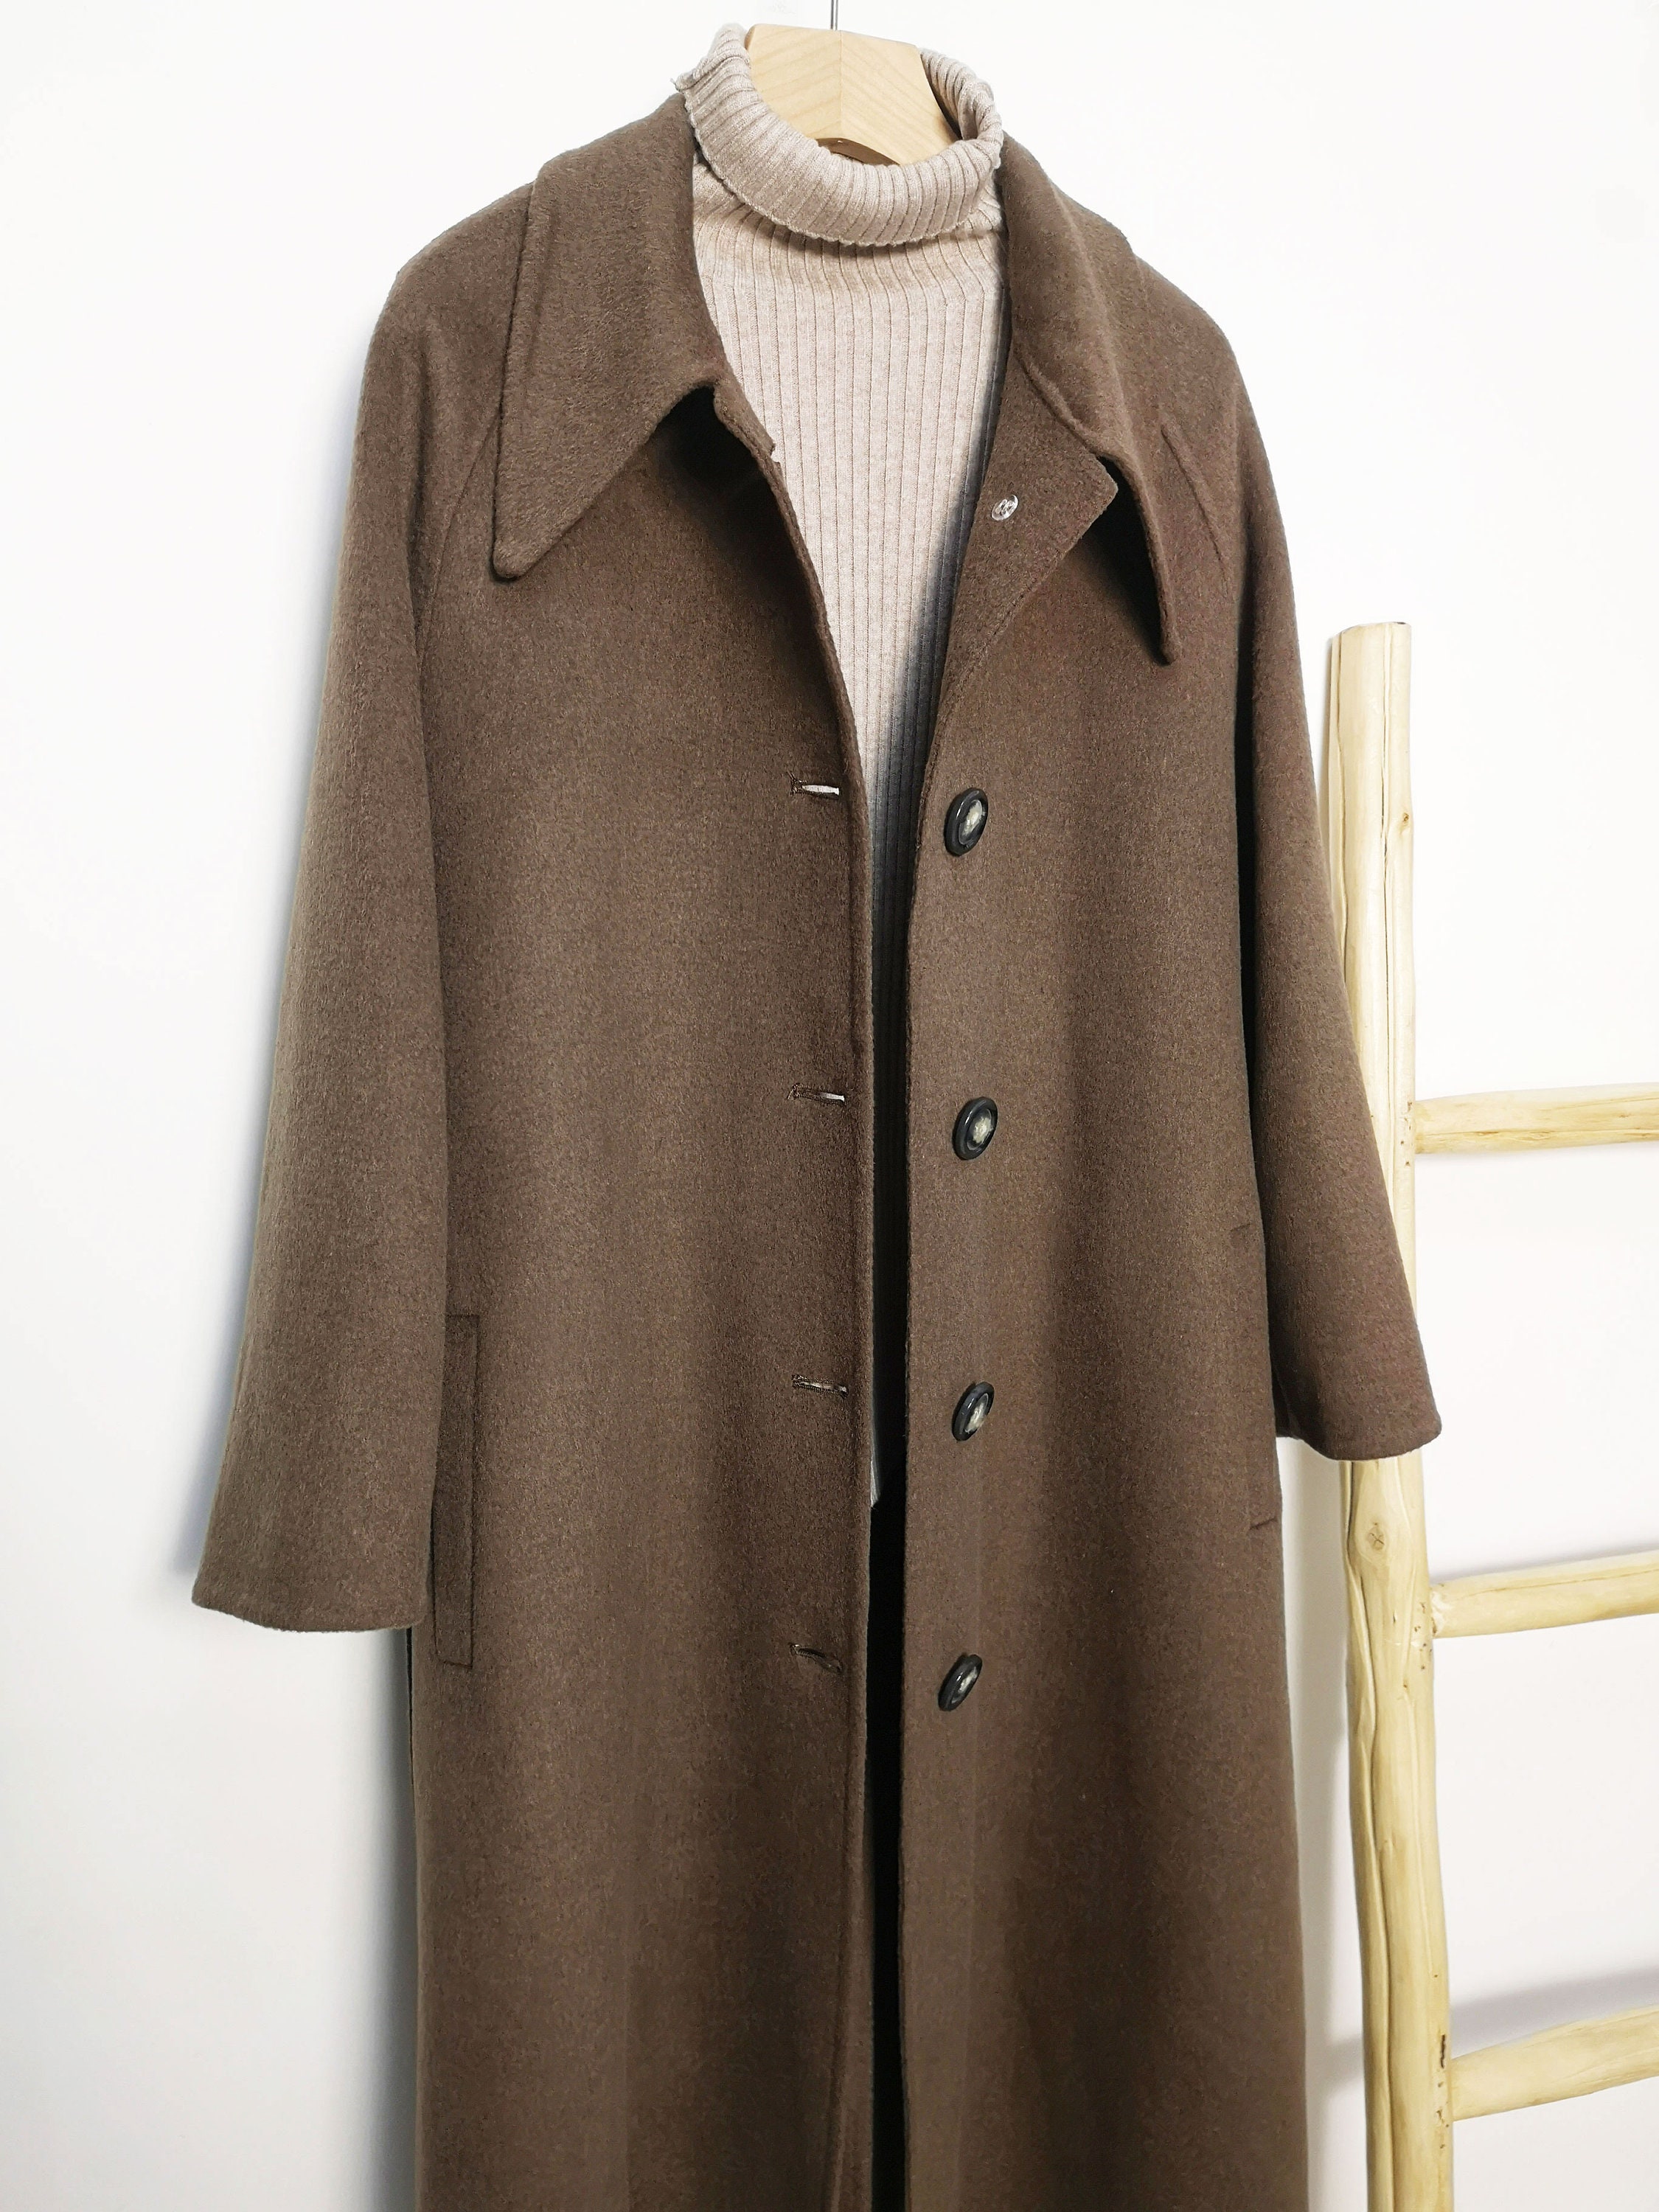 Brown Women Wool Coat Single-breasted Lapel Overcoat Long | Etsy